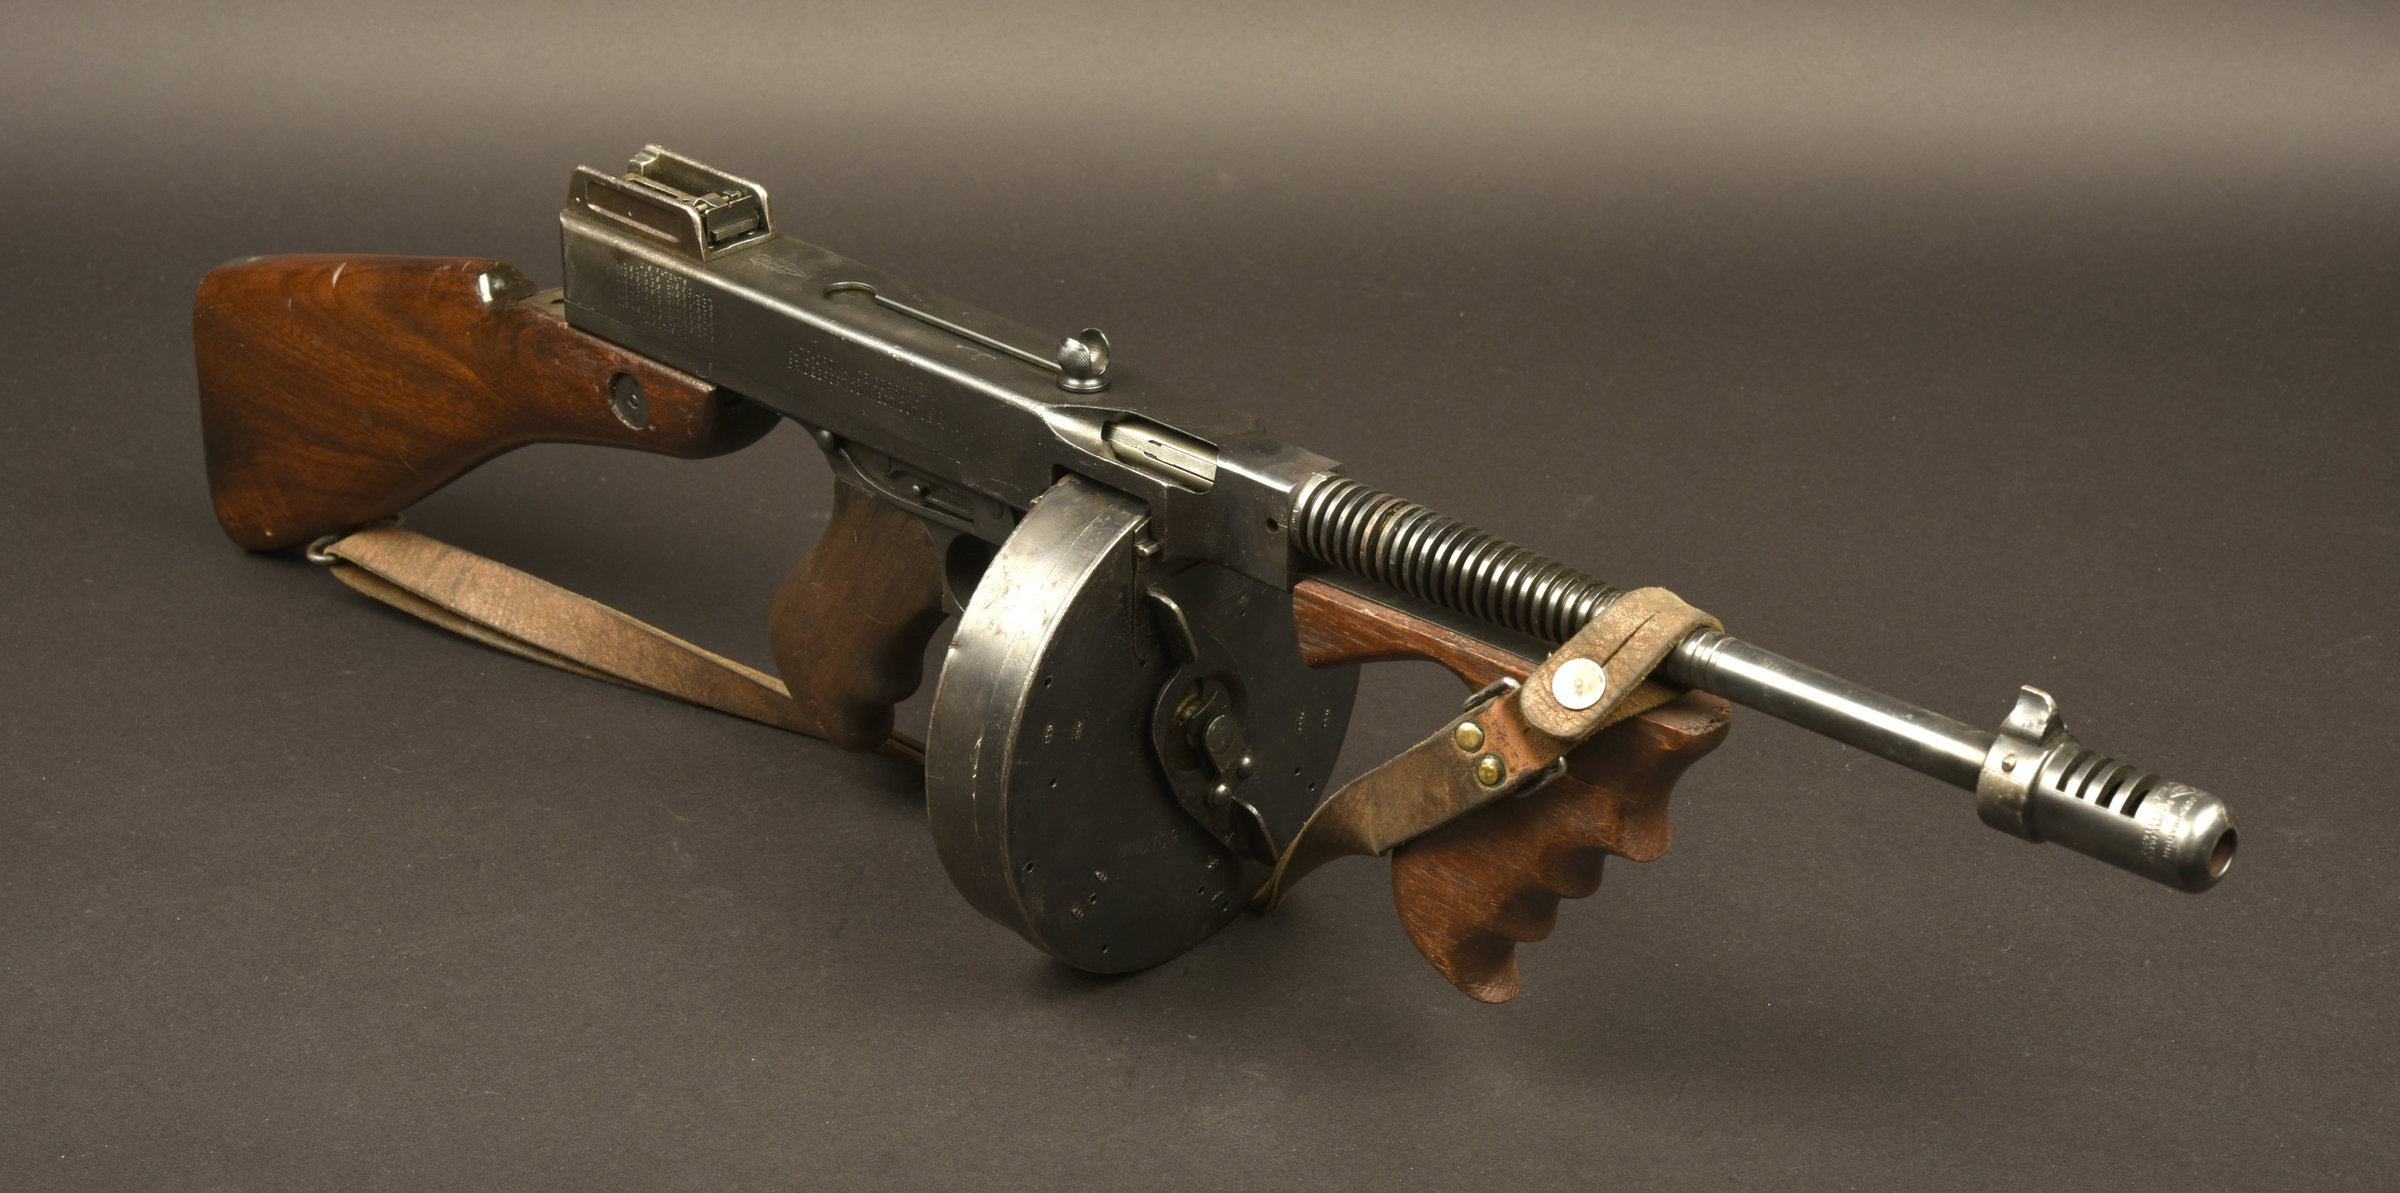 Pistolet mitrailleur Thompson Catégorie C utilisée dans le film Borsalino Aiolfi G b r